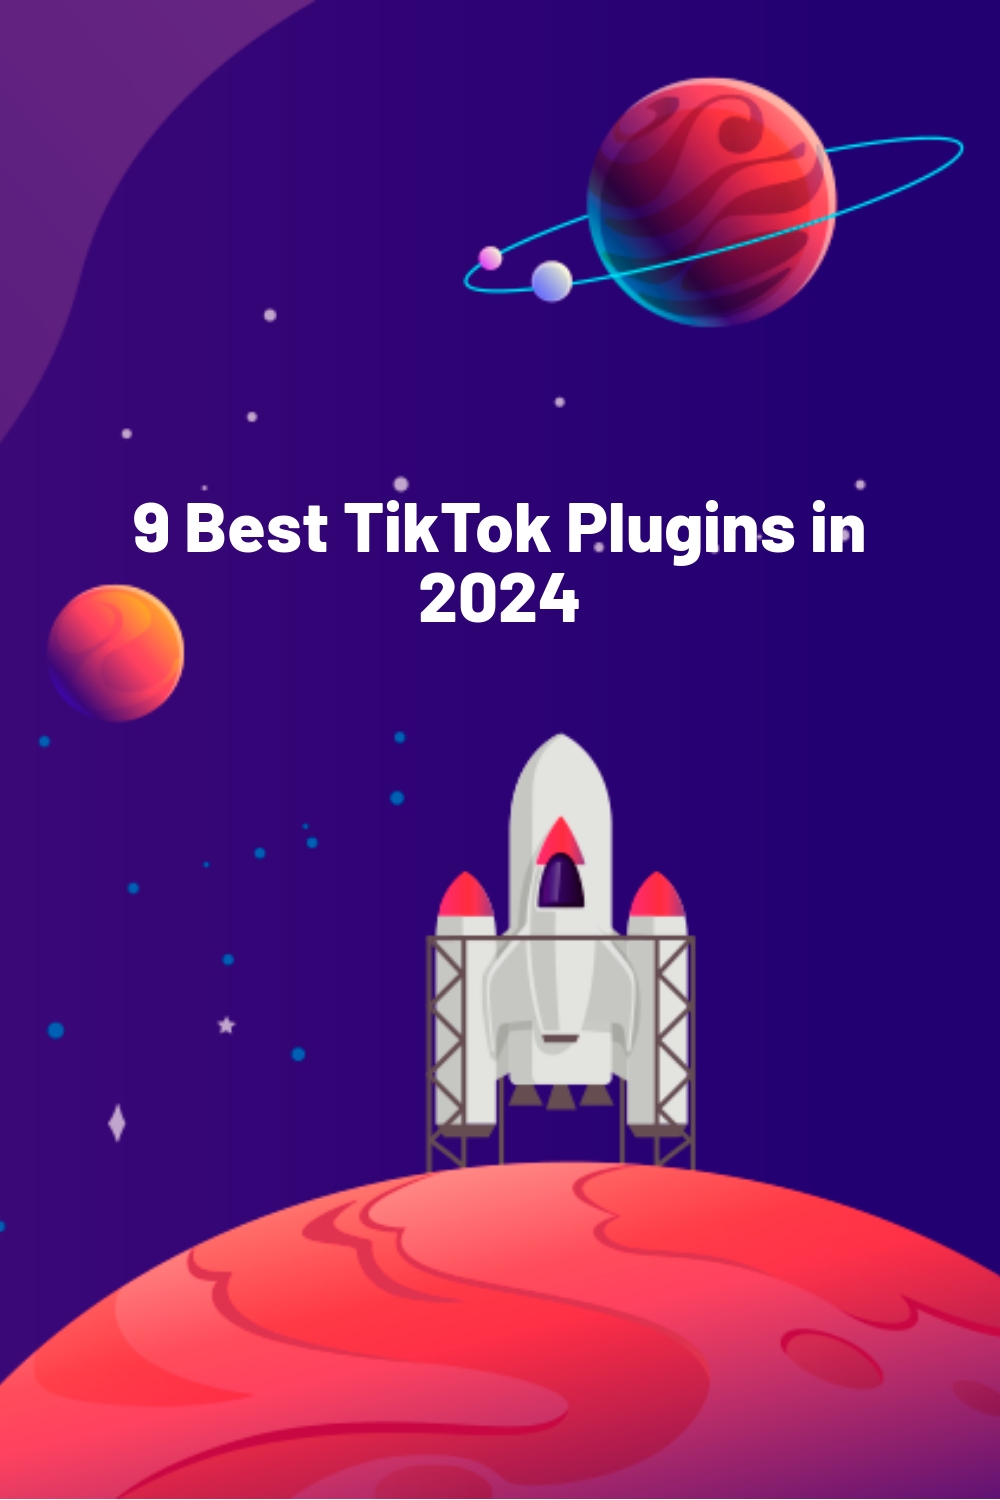 9 Best TikTok Plugins in 2024